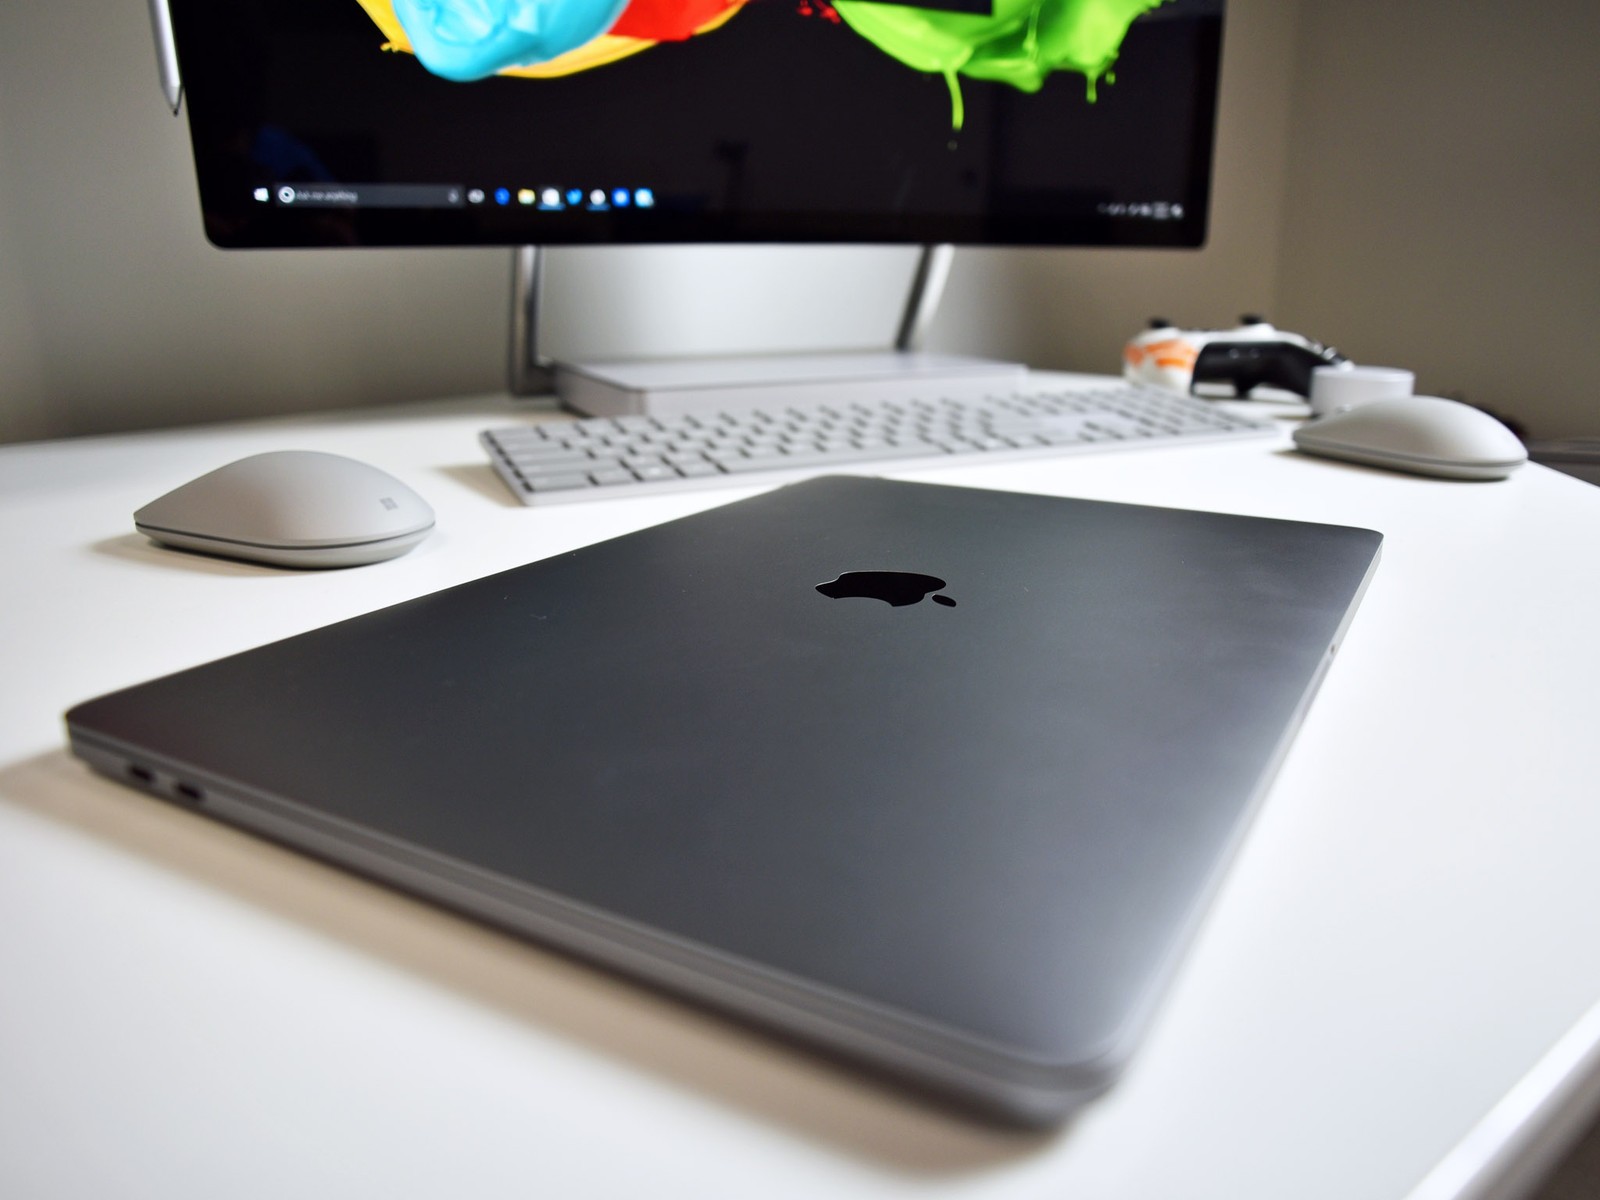 How long do apple laptops last